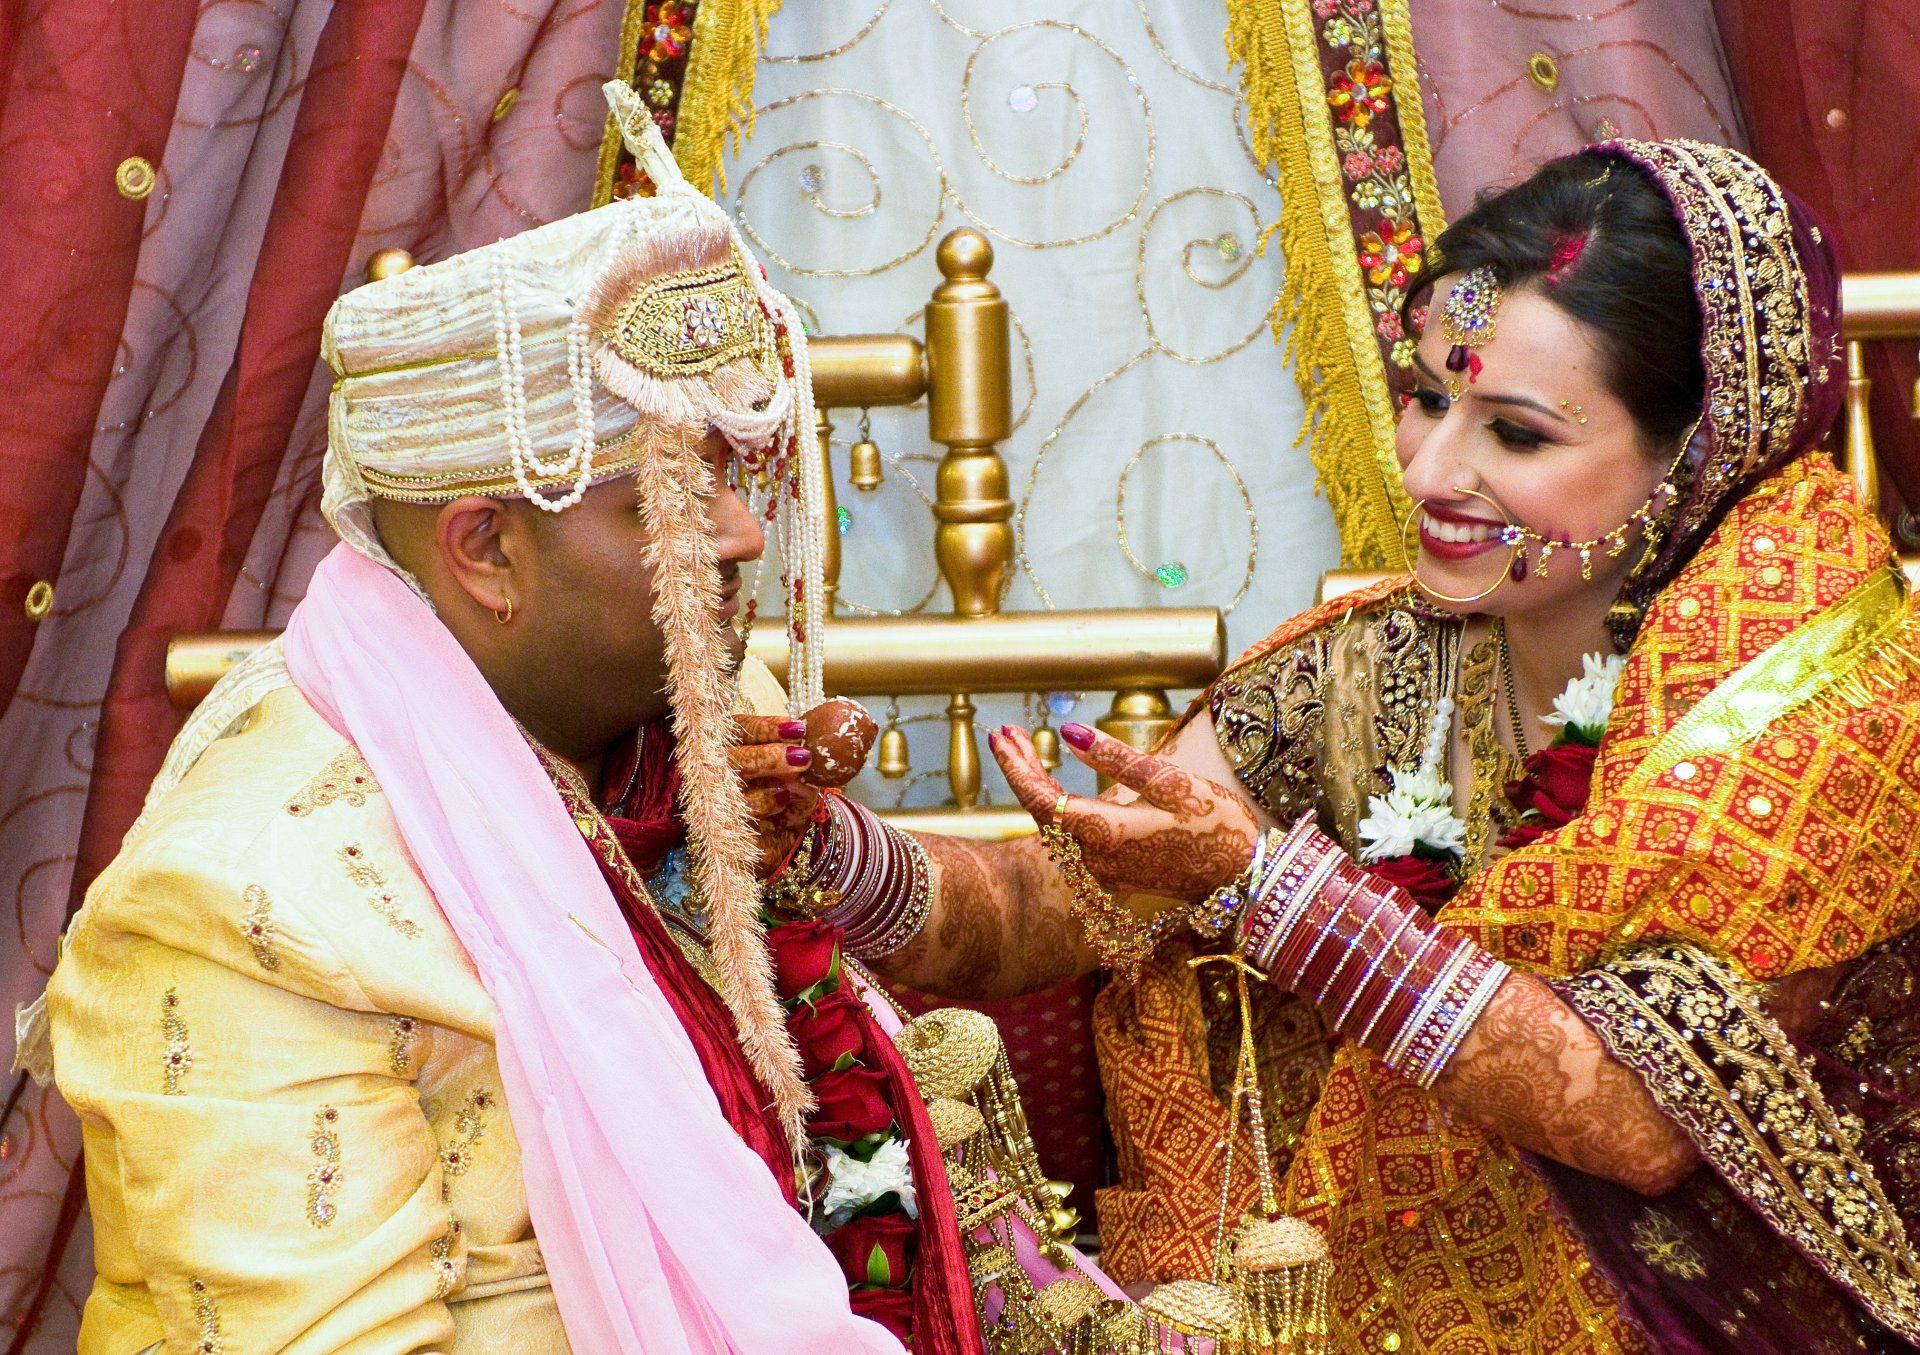 Hindu custom bride feeds her husband with sweet delacasies